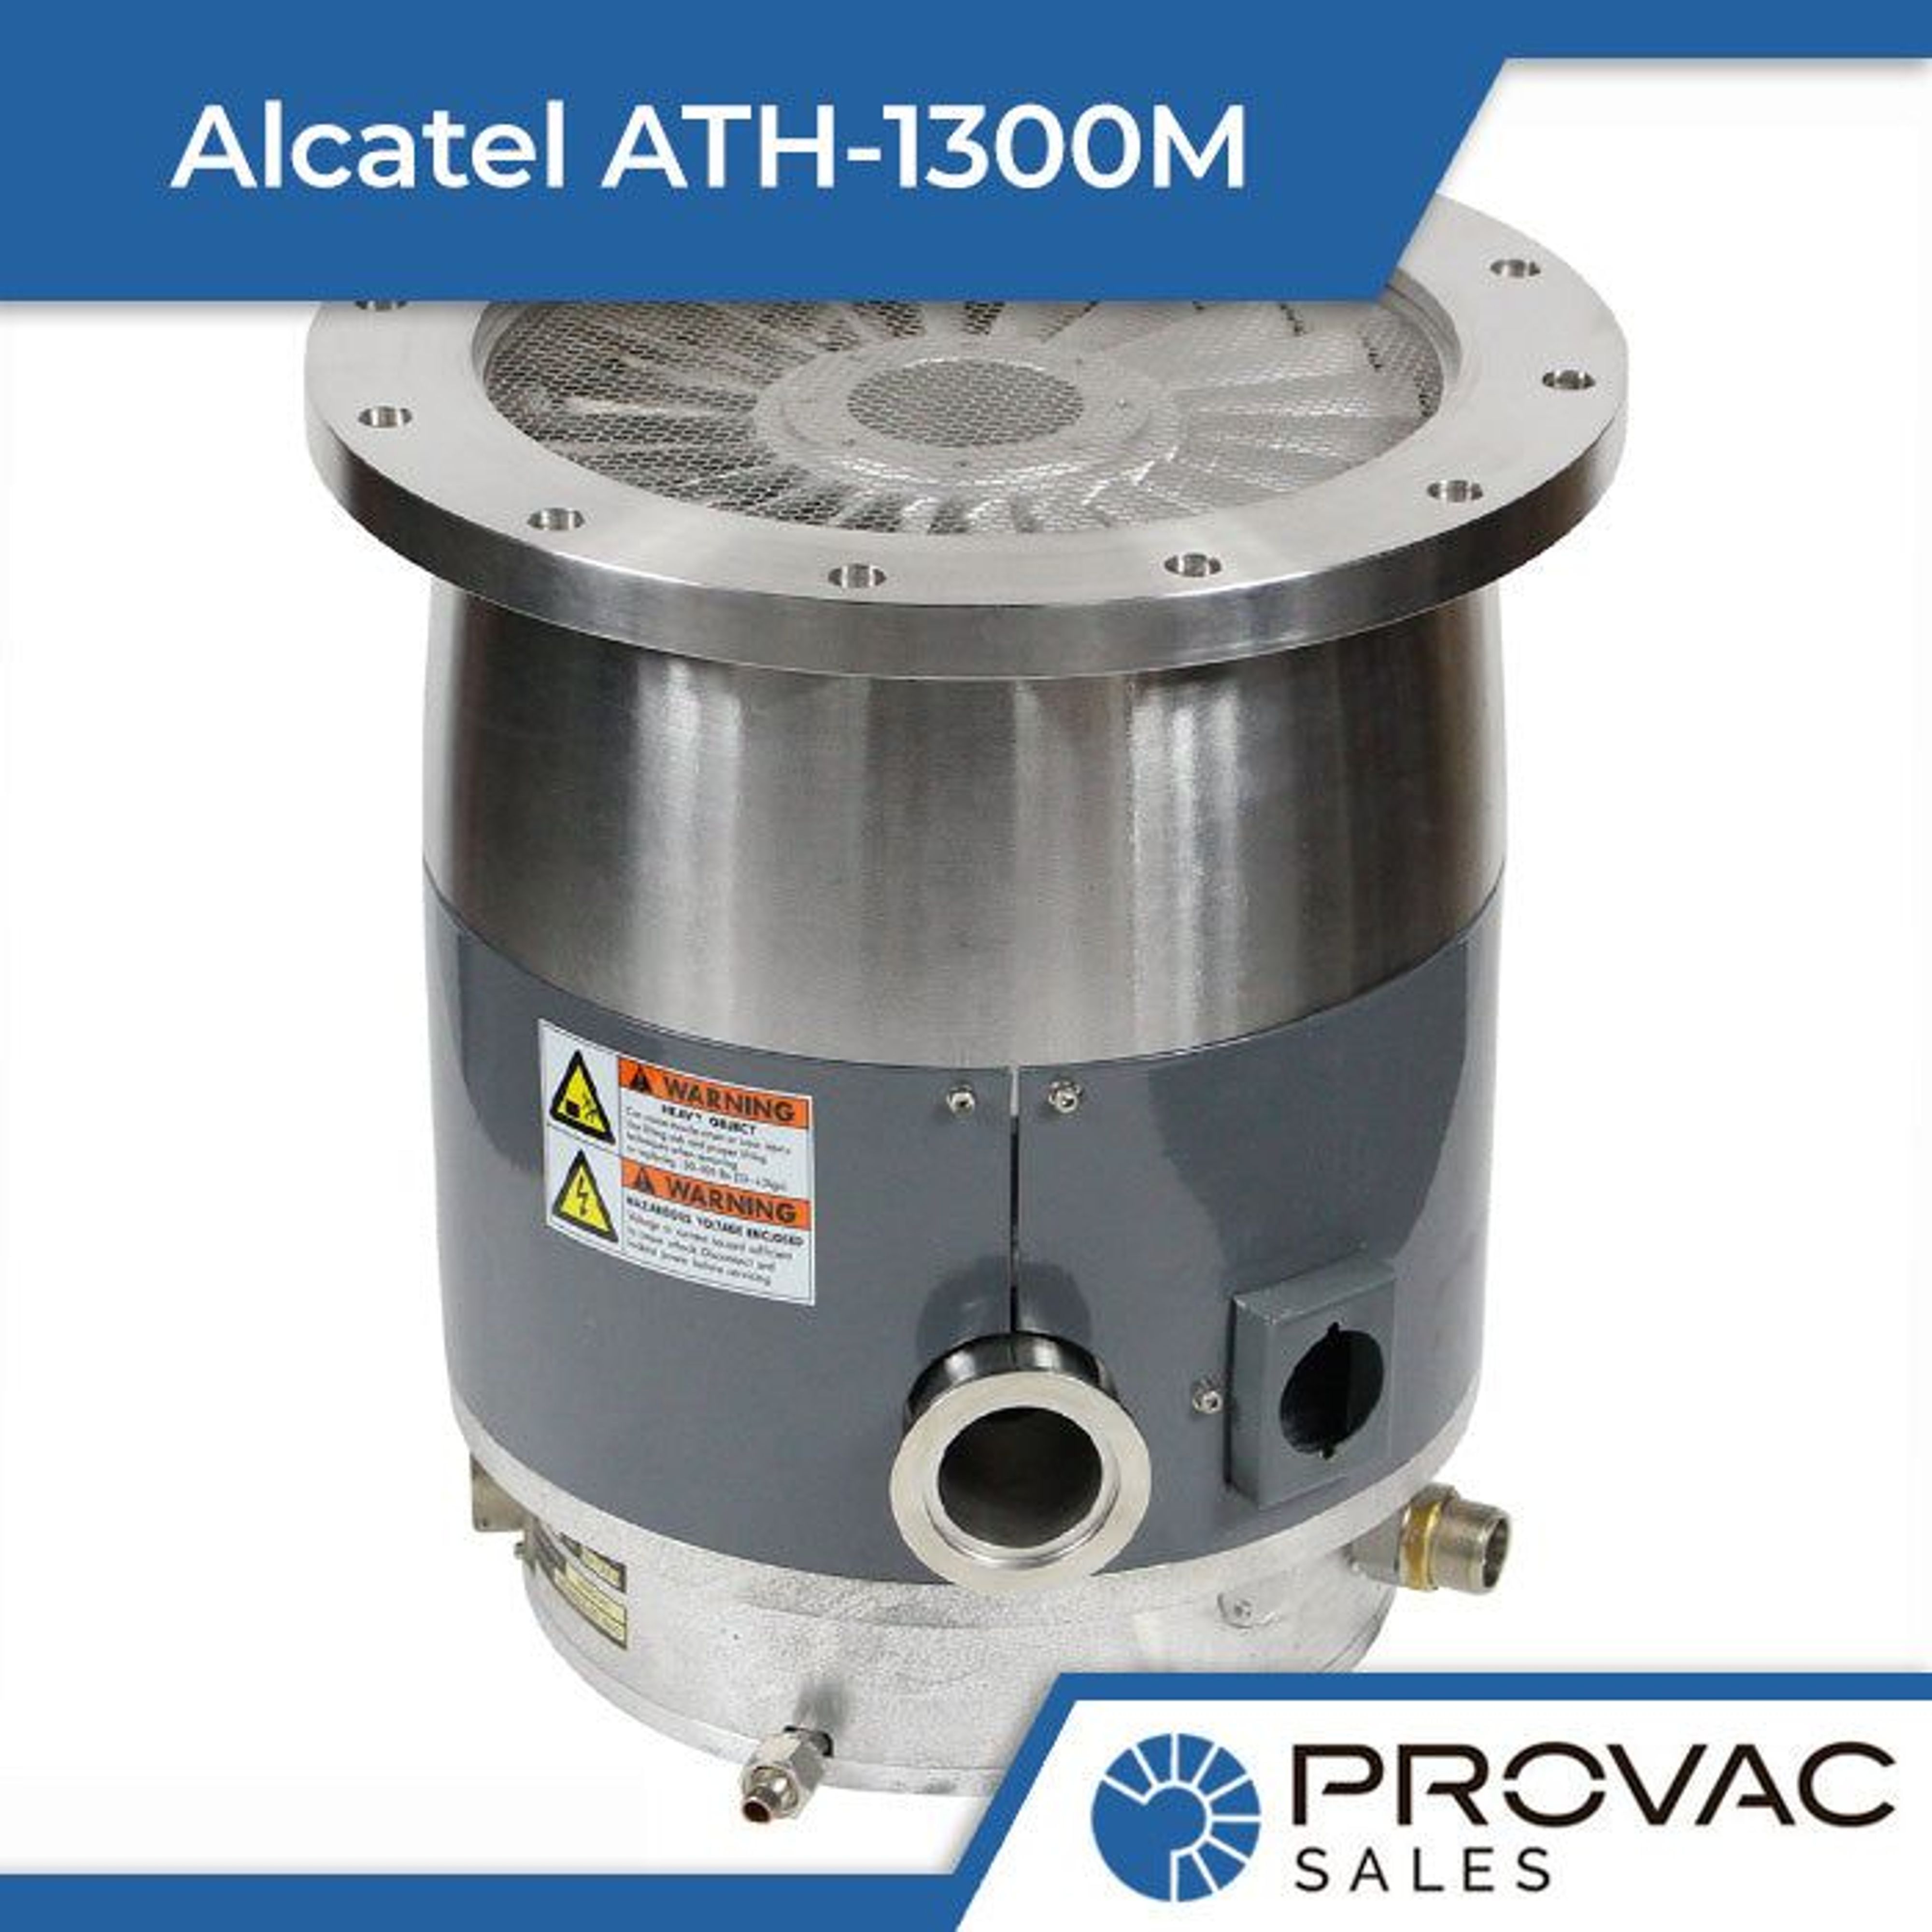 Alcatel ATH-1300M Turbomolecular Pump Background